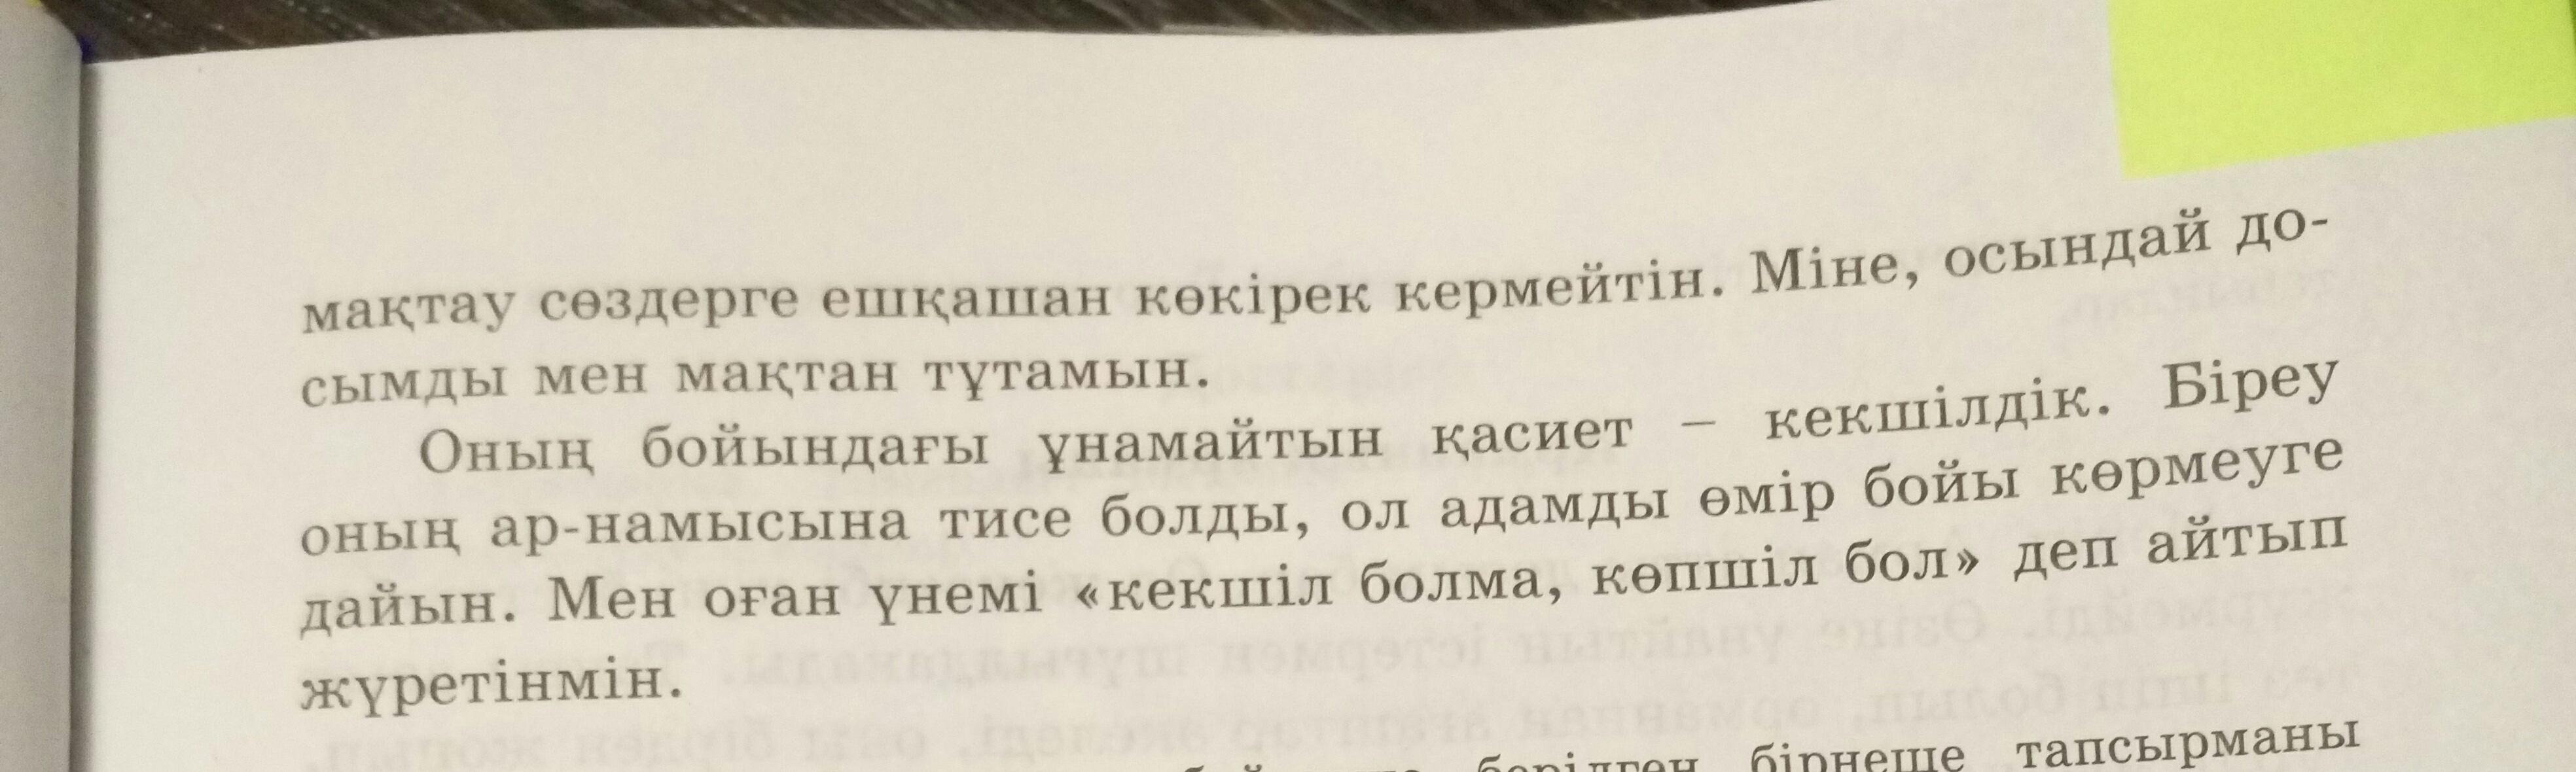 члены перевод на казахский язык фото 82